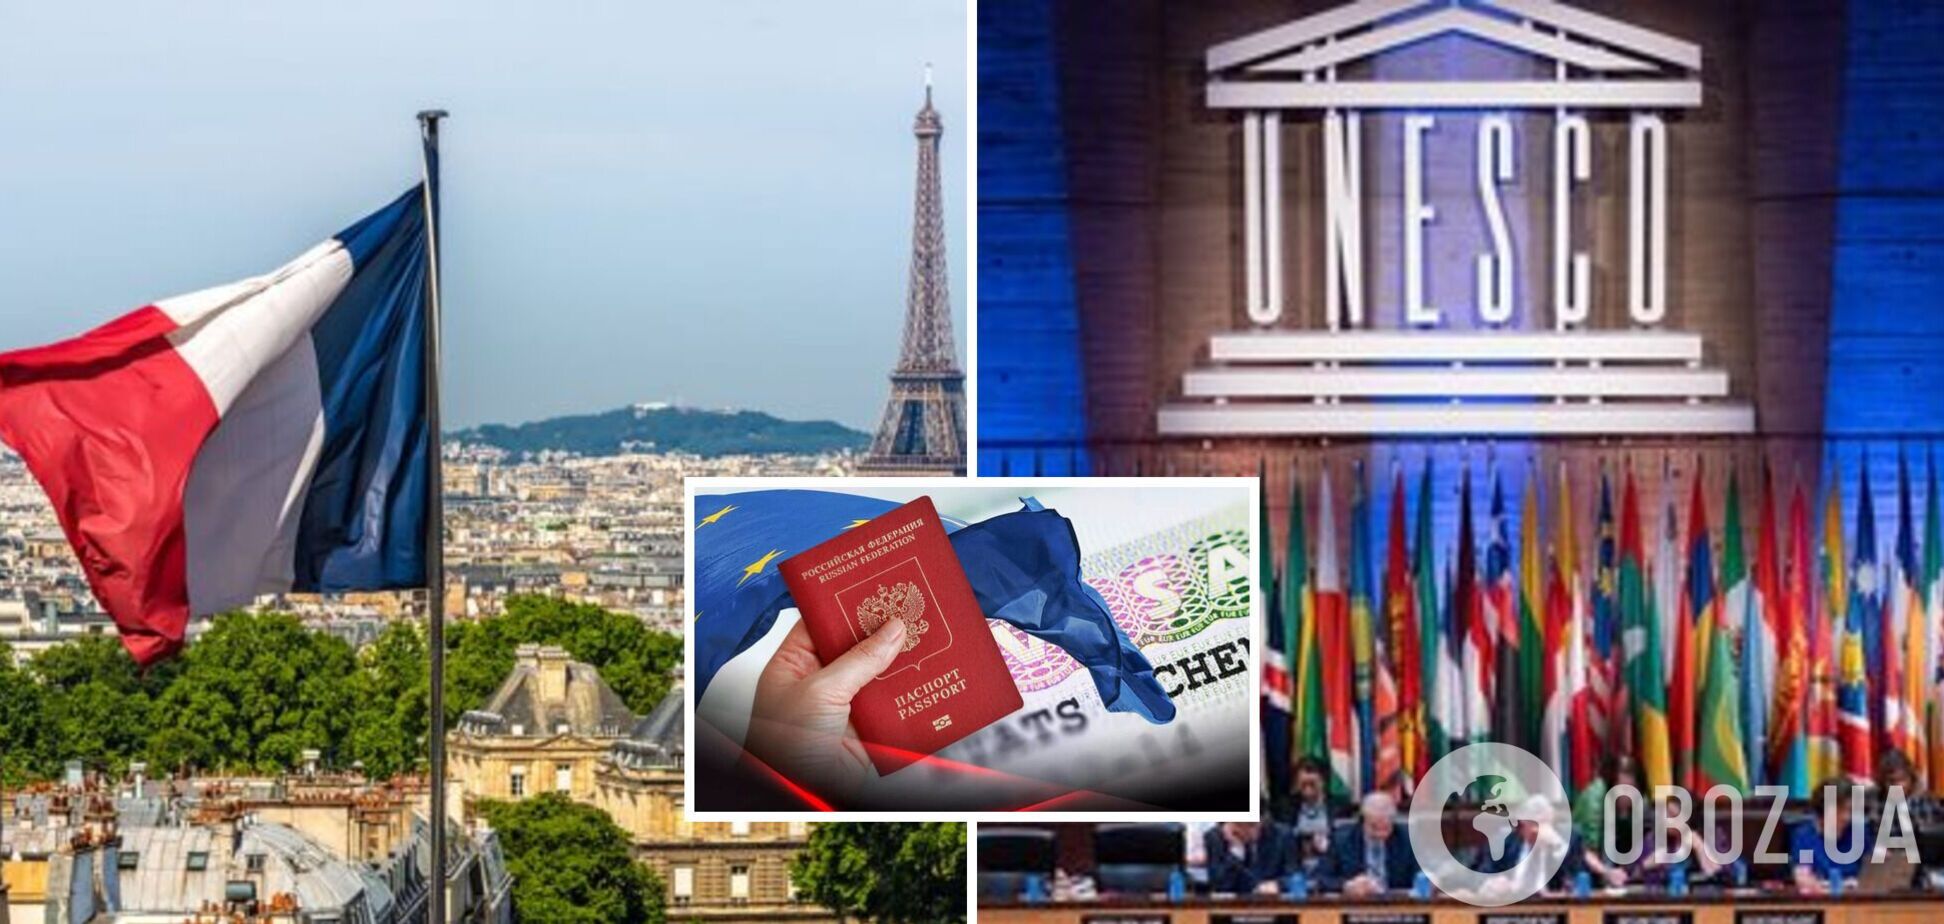 Представители России не успели на открытие конференции ЮНЕСКО: Франция задержала выдачу виз для них